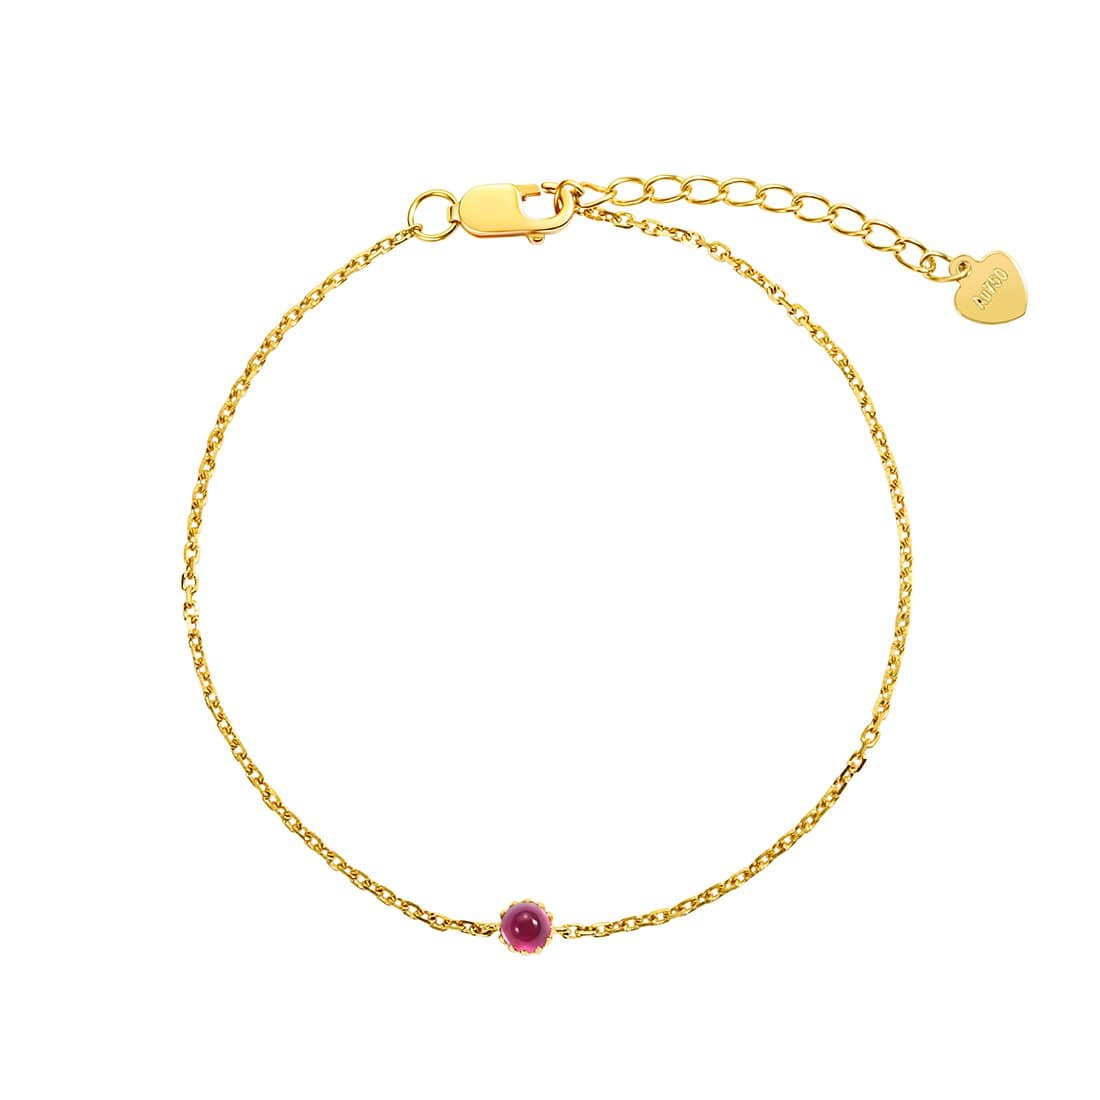 Red ruby birthstone 18k yellow bracelet minimalist jewelry for women